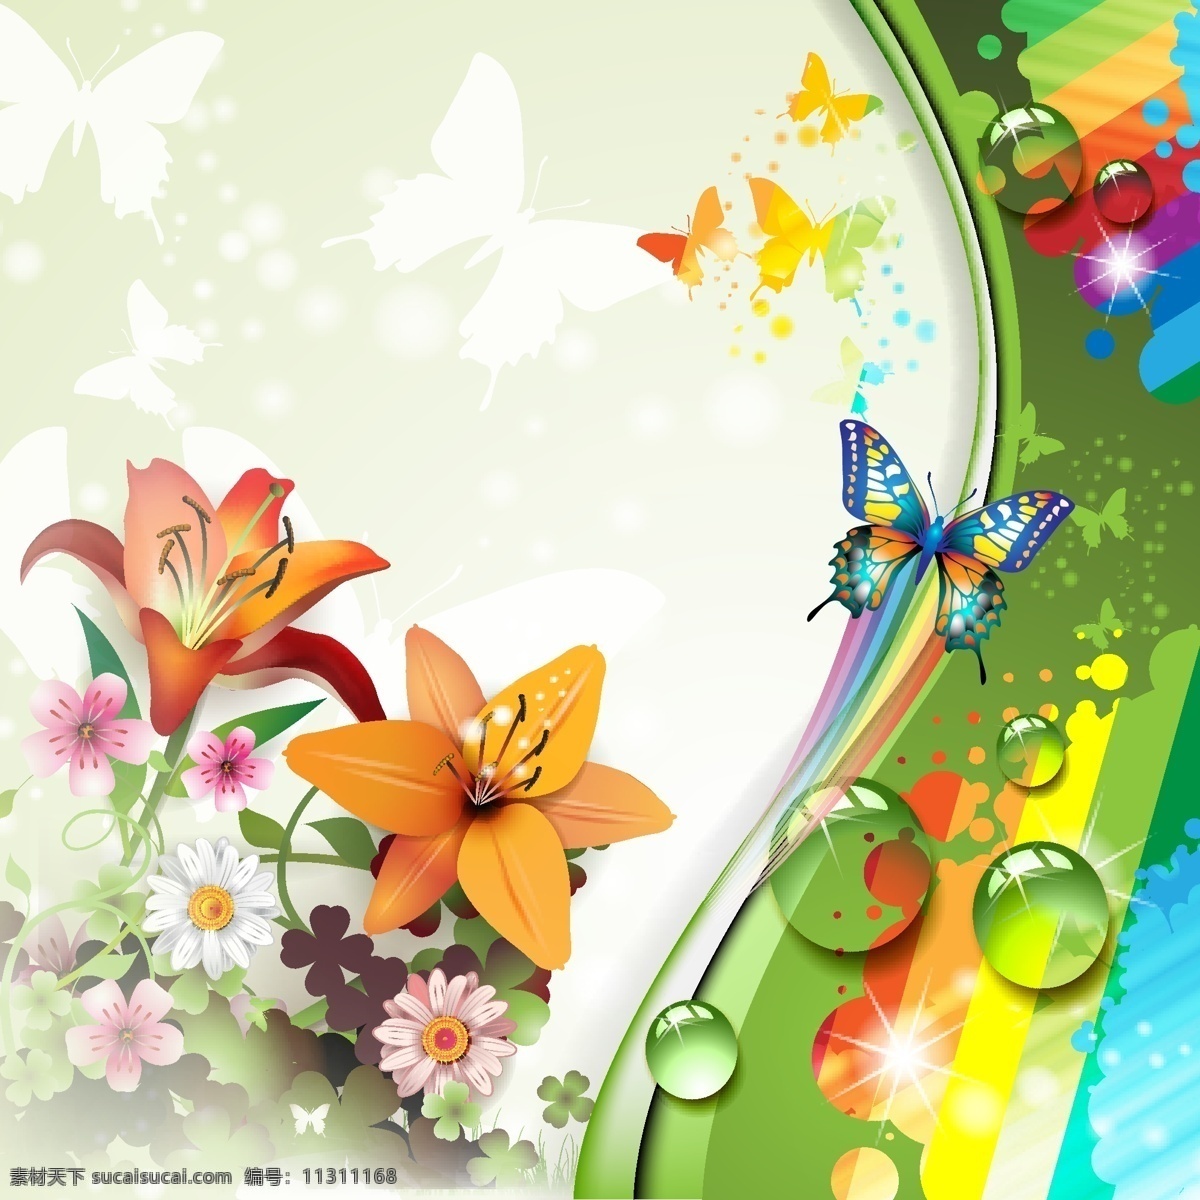 五颜六色 花朵 蝴蝶 背景 矢量 花 花卉 向量的动物 丰富多彩 矢量图 其他矢量图